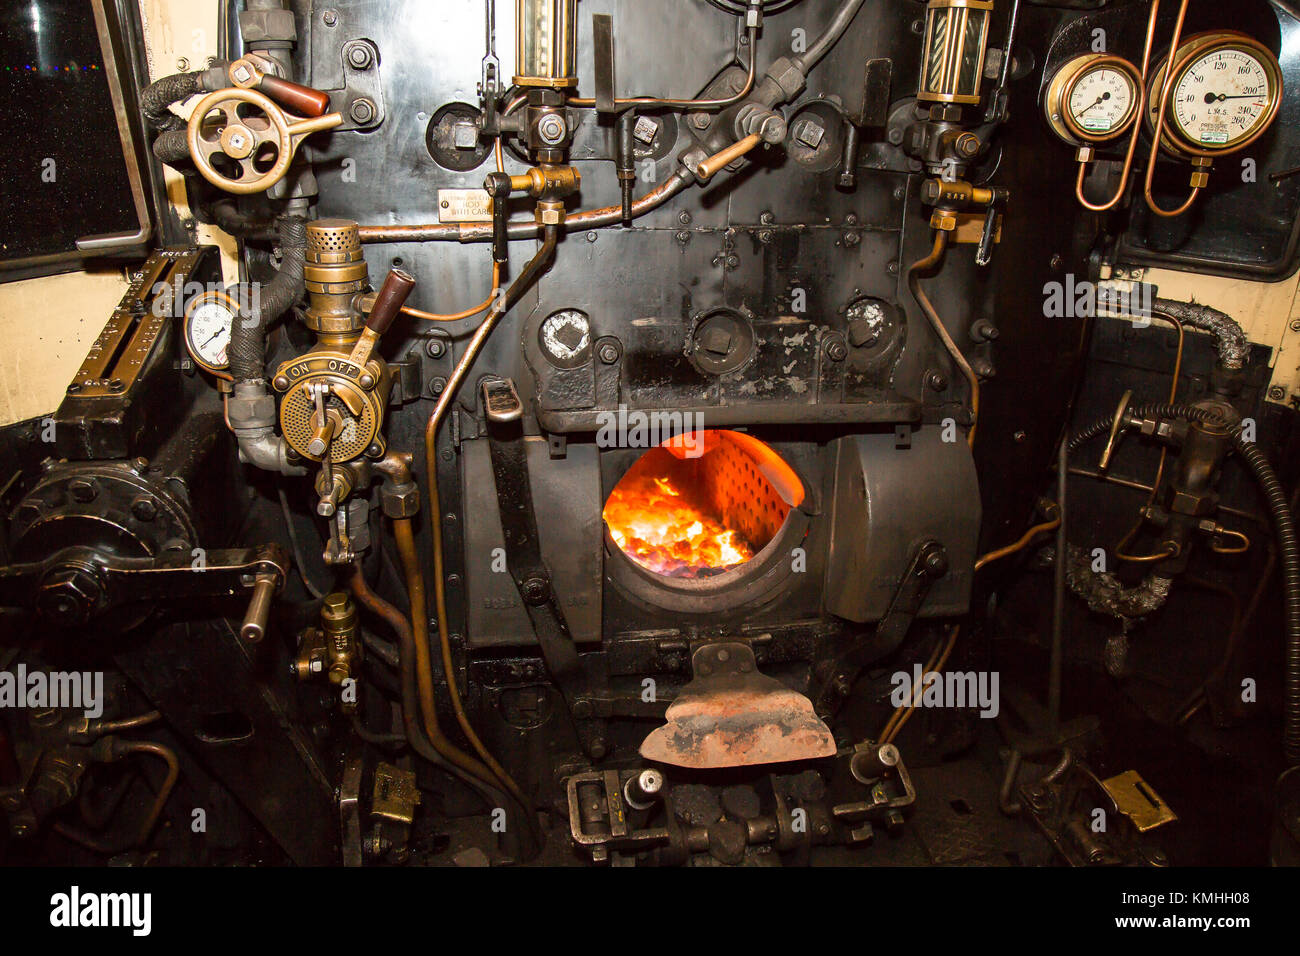 Coup de feu de nuit dans la cabine de locomotive à vapeur, en regardant dans la chambre d'incendie éclairée de la plaque arrière de la chaudière. Soupapes, tiges, tuyaux, manomètres. Banque D'Images